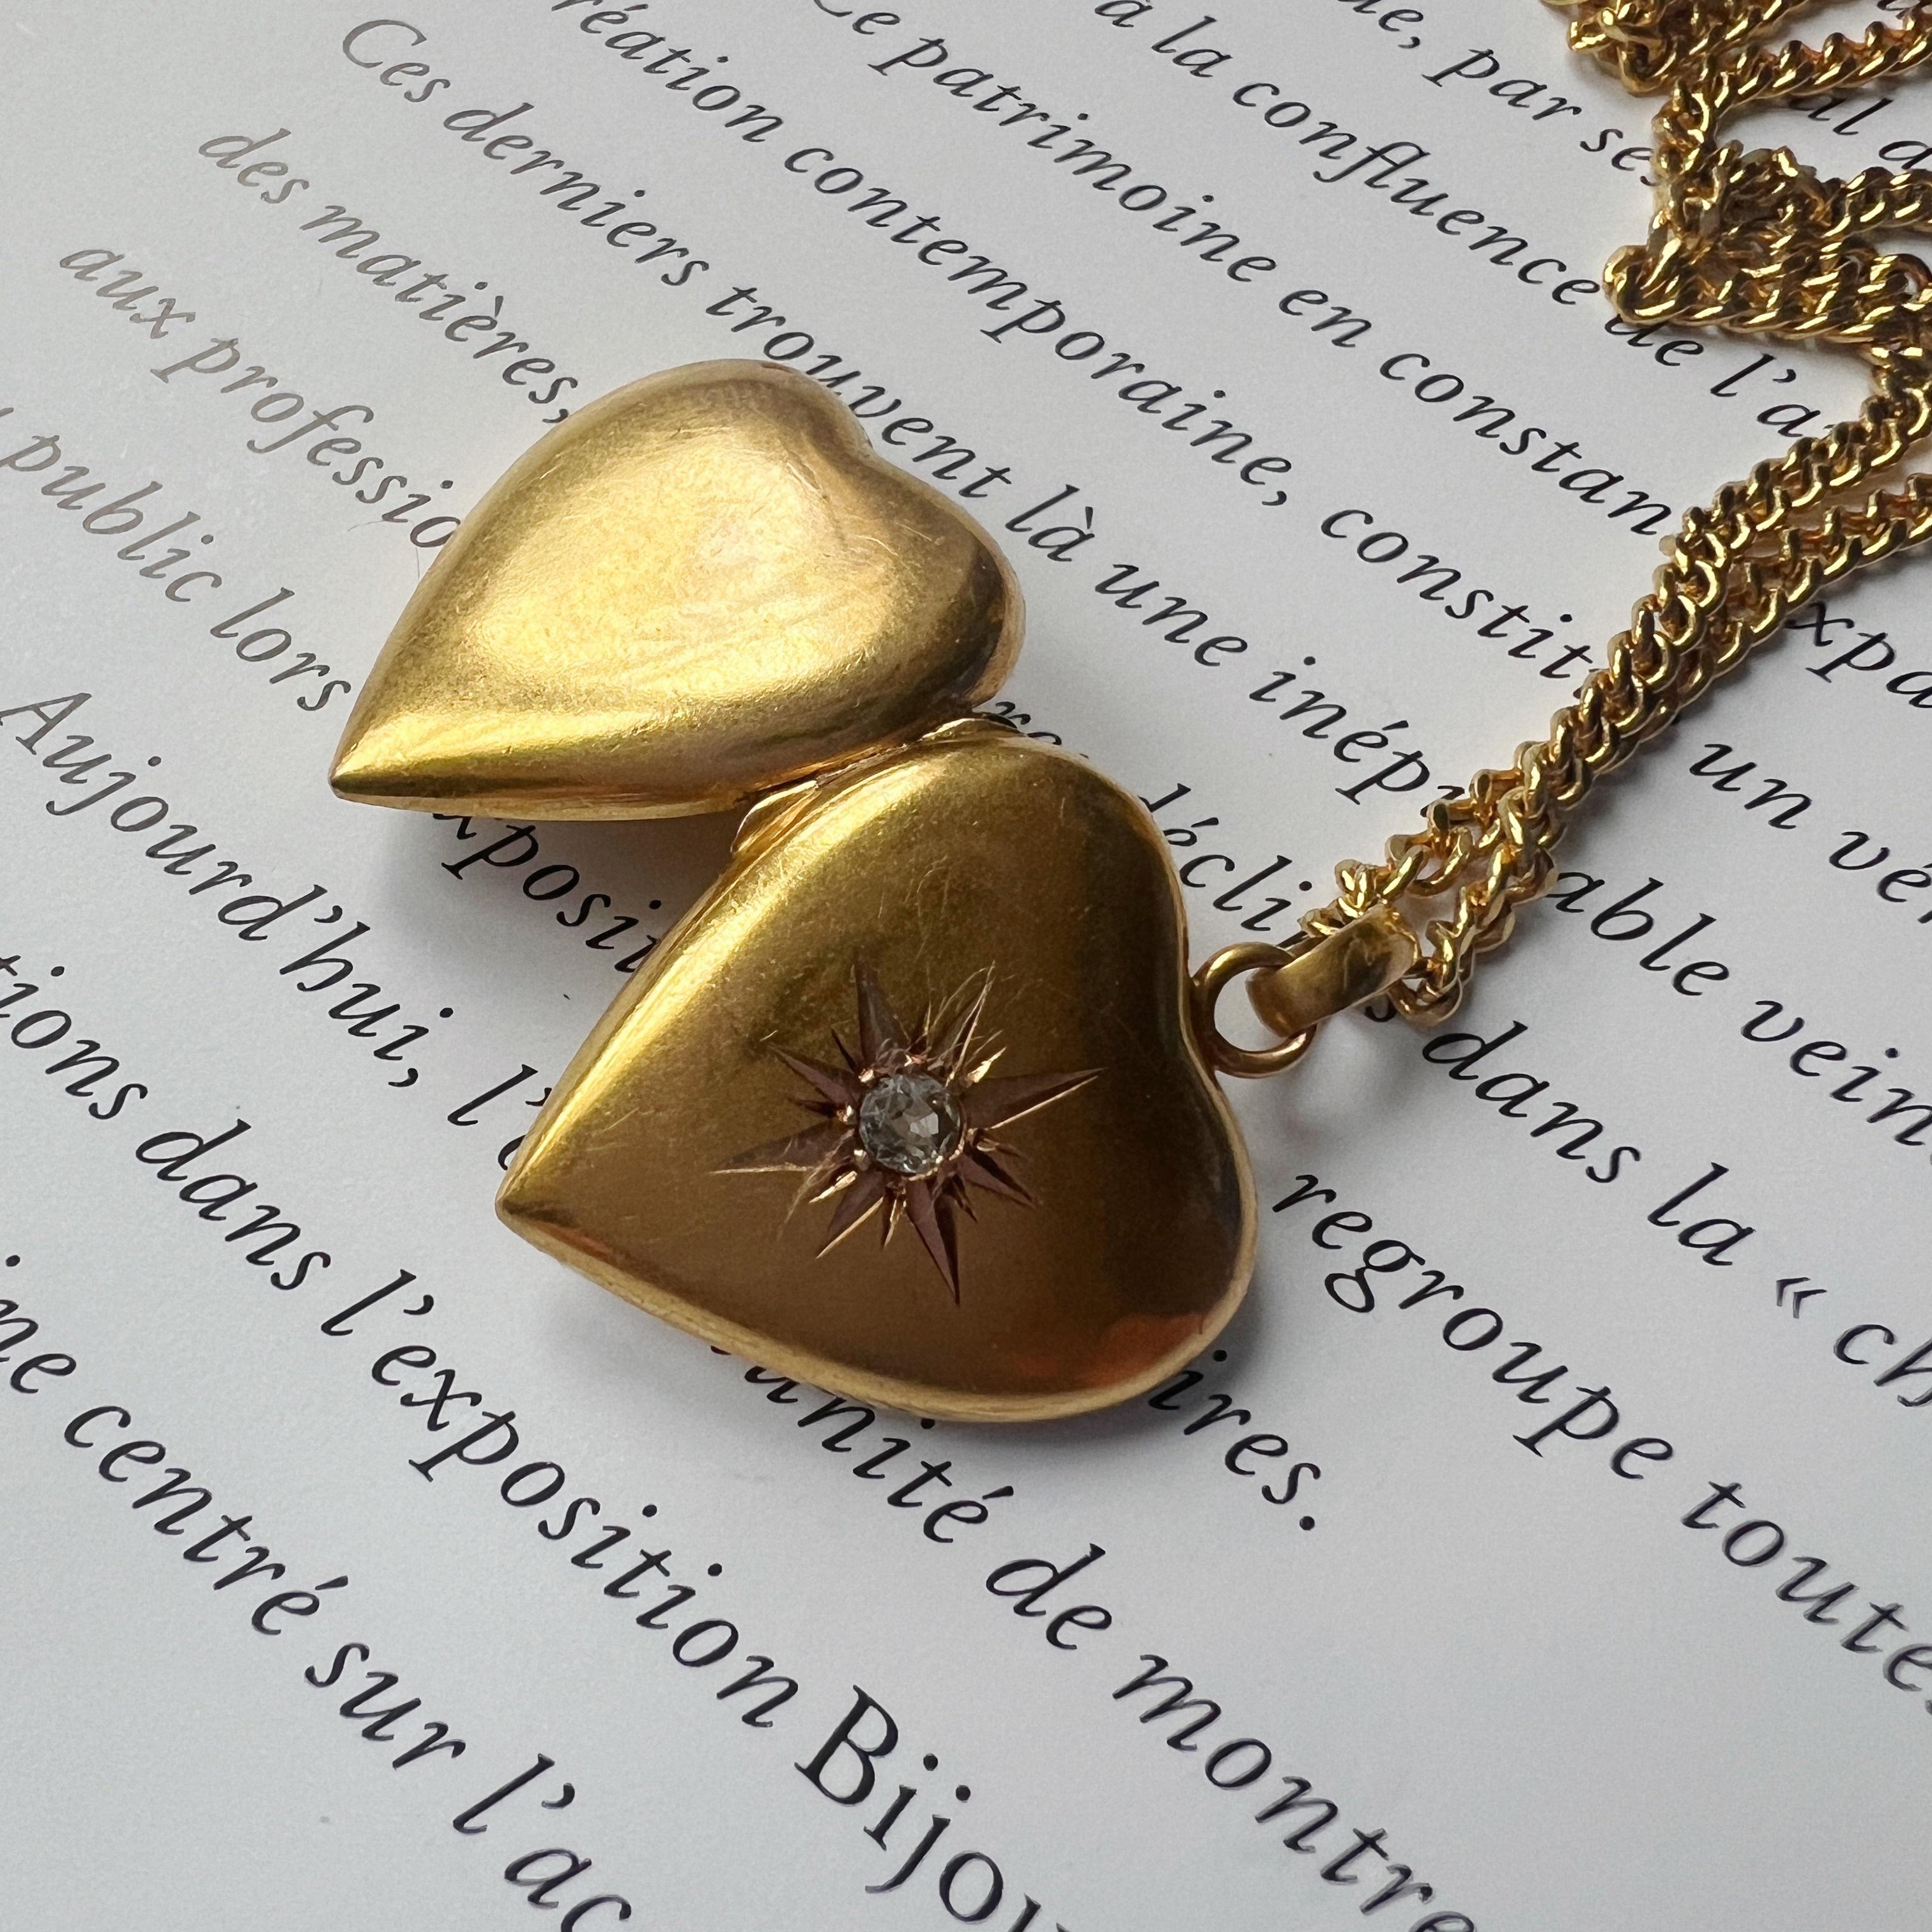 Nous vendons un très joli pendentif en or 18 carats en forme de cœur avec photo, une pièce intemporelle qui allie harmonieusement le romantisme et une touche de charme antique.

Le pendentif est en forme de cœur, symbole d'un amour et d'un